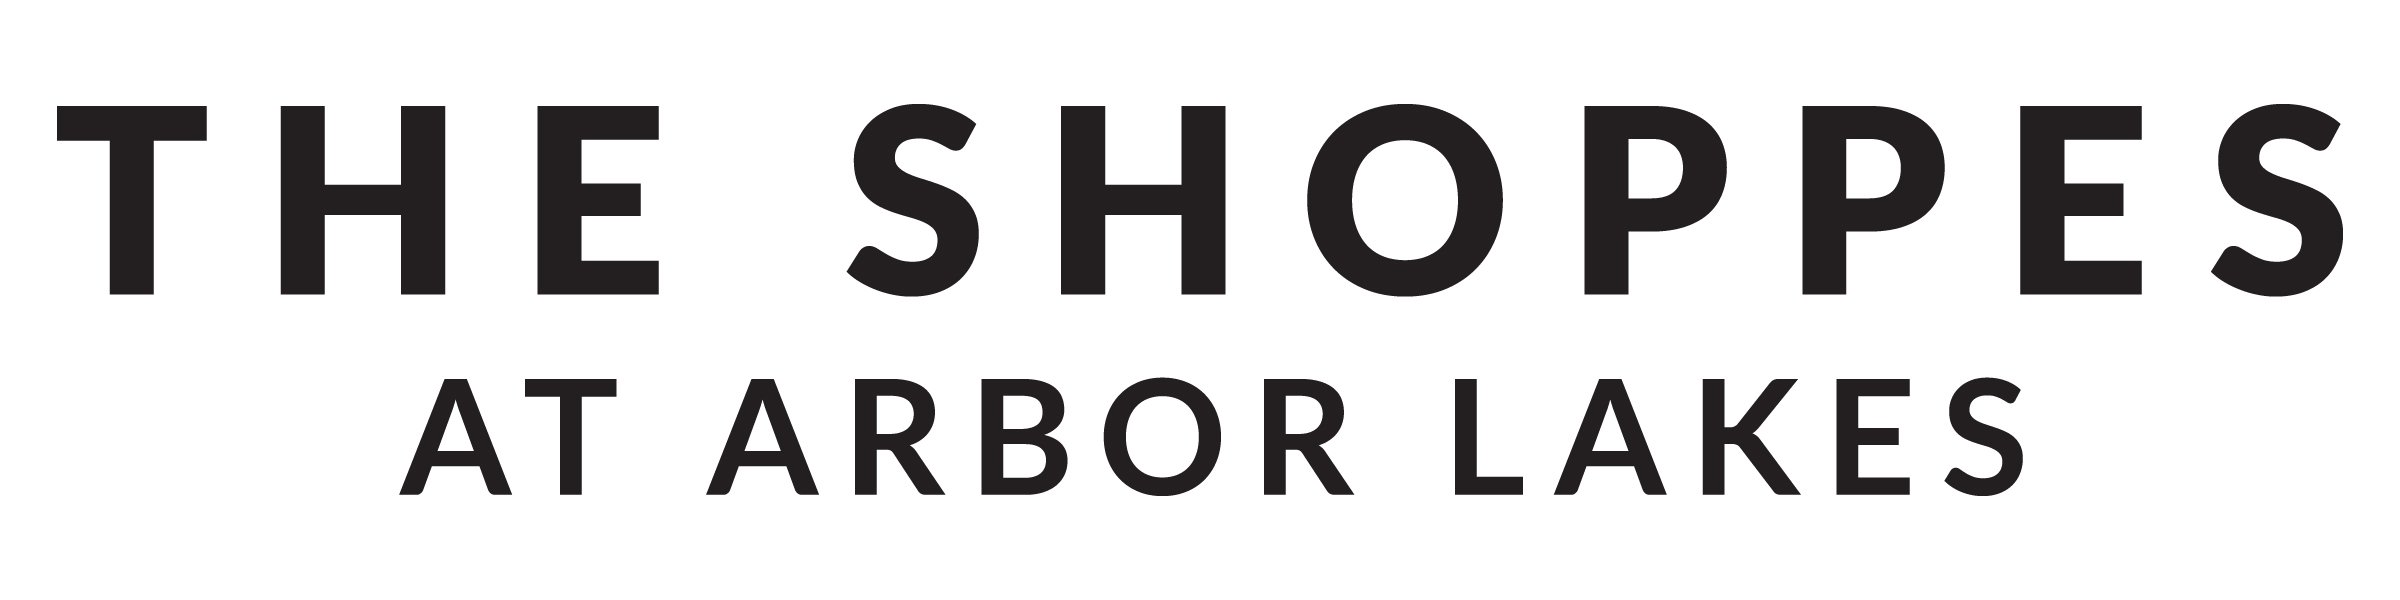 The Shoppes Logo.jpg